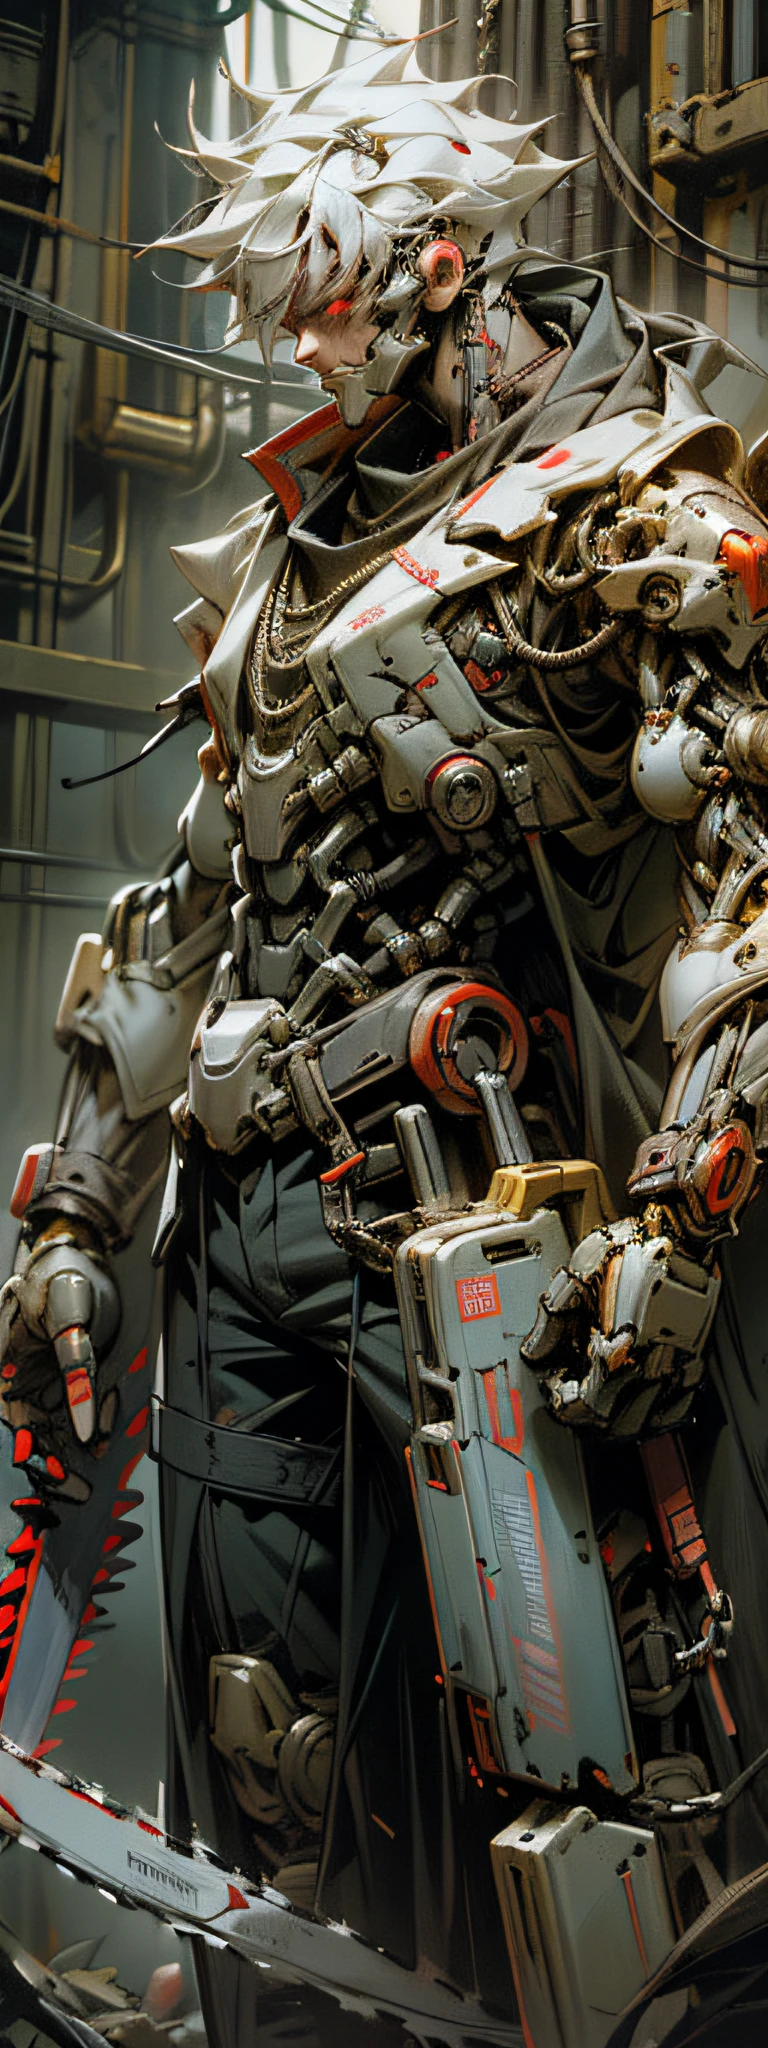 Dunkel_Fantasie,Cyberpunk,(Kettensäge,Kettensäge man,Rot:1.1),1 Mann,Mechanisches Wunderwerk,Roboterpräsenz,Kybernetischer Wächter,